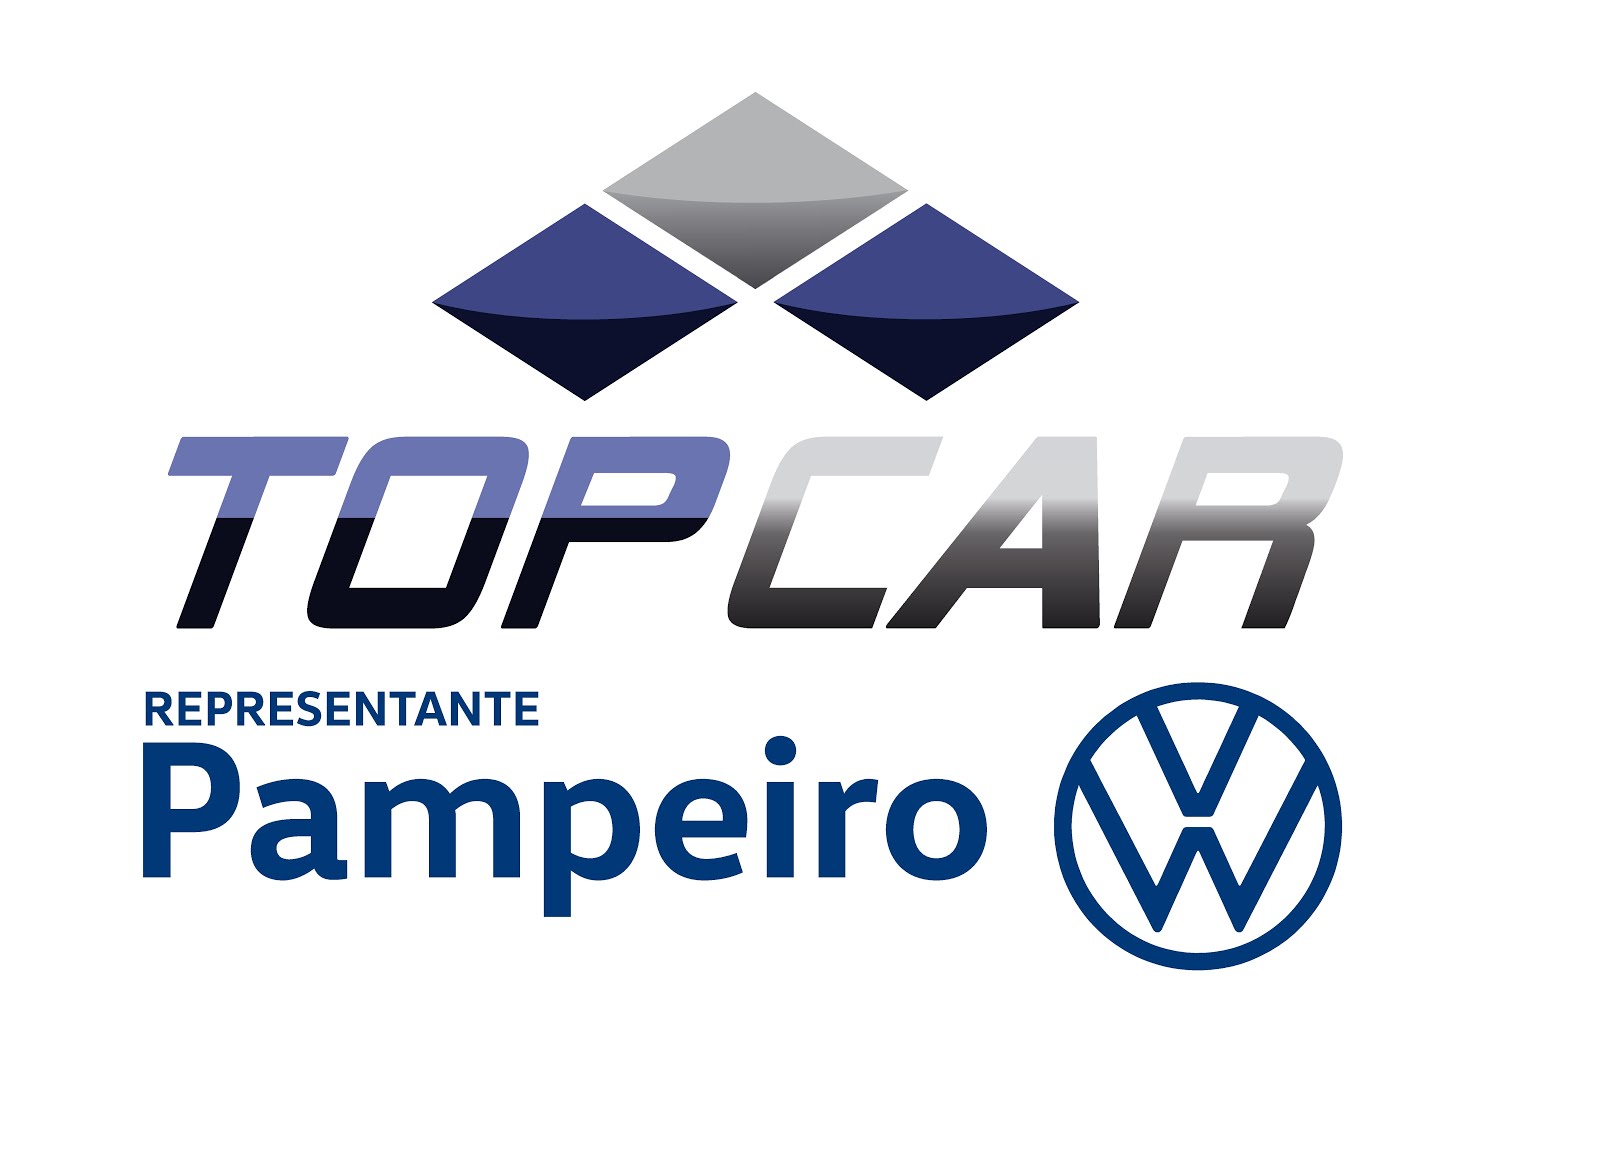 A Top Car agora é PAMPEIRO!